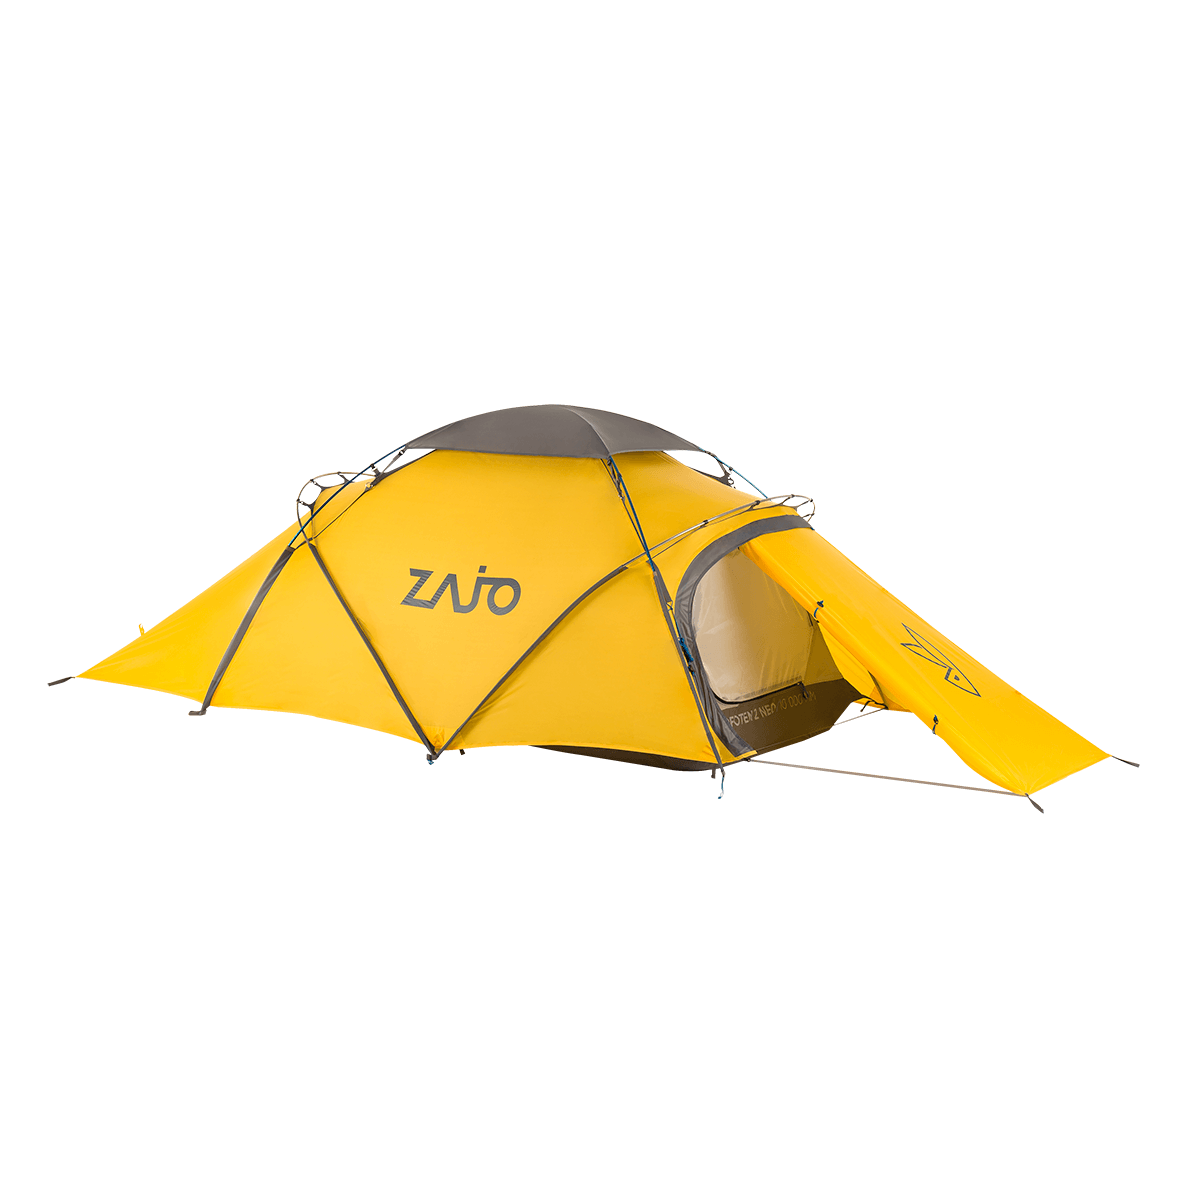 Stany Zajo Lofoten 2 Tent